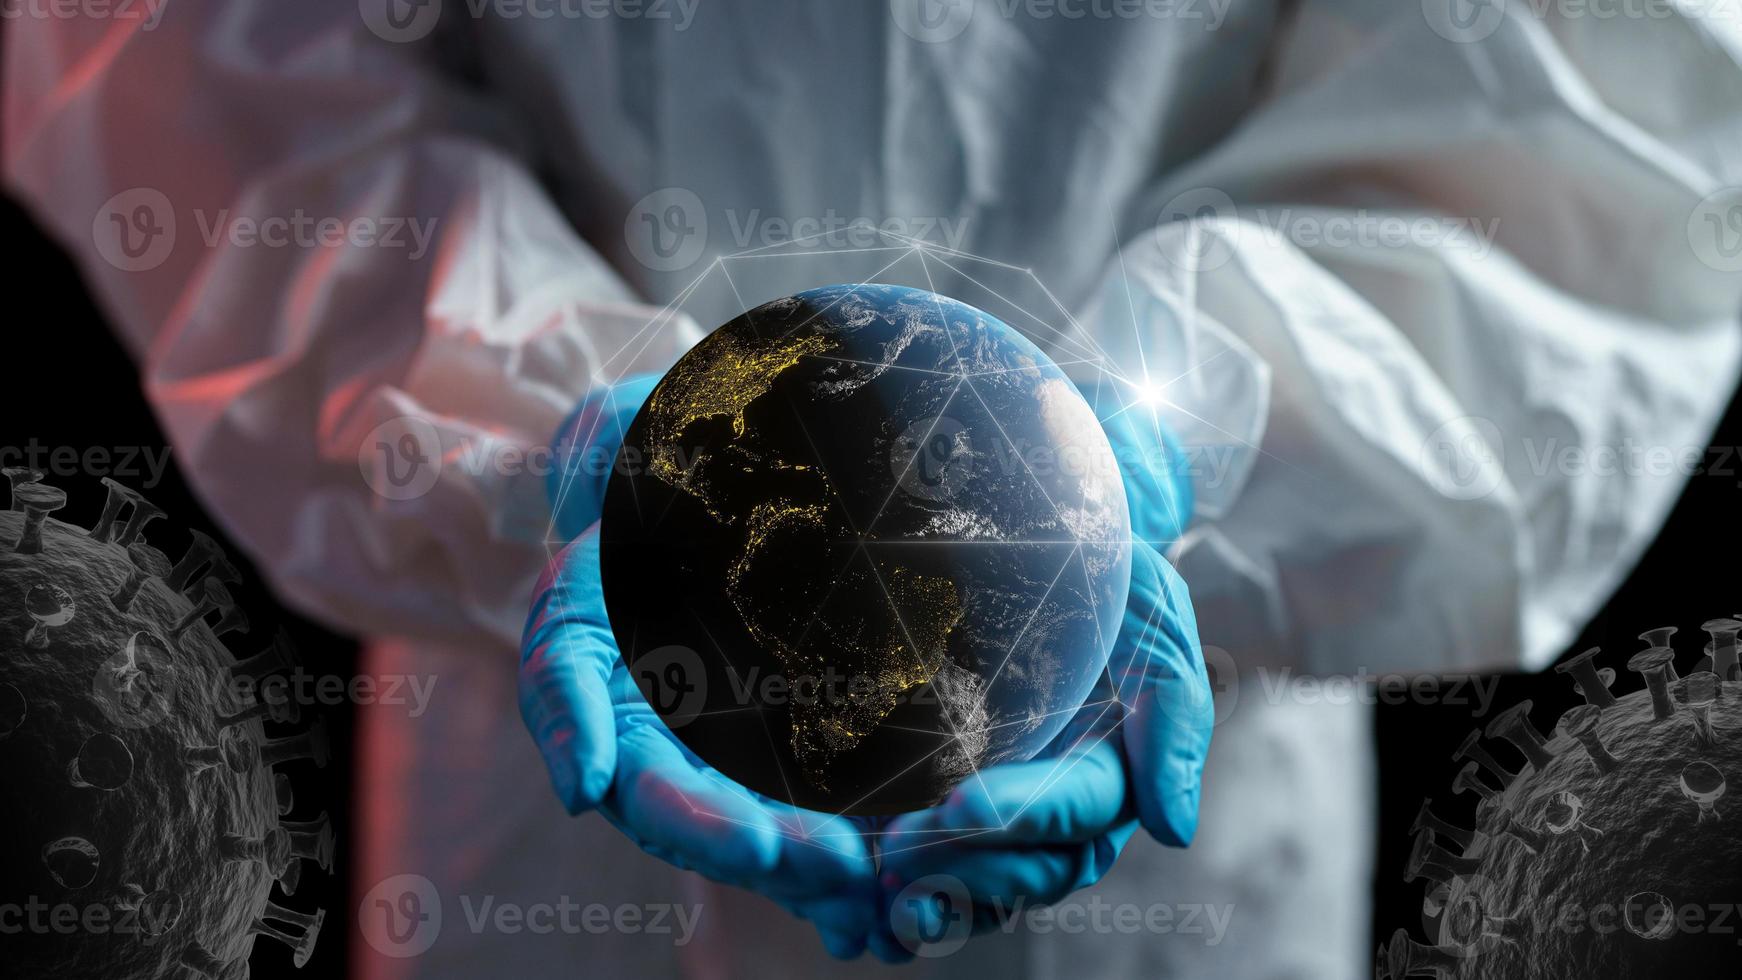 femme en costume de matières dangereuses tenant un globe dans la main, arrêtez le virus pour sauver le monde. protection contre le virus corona ou covid-19. photo